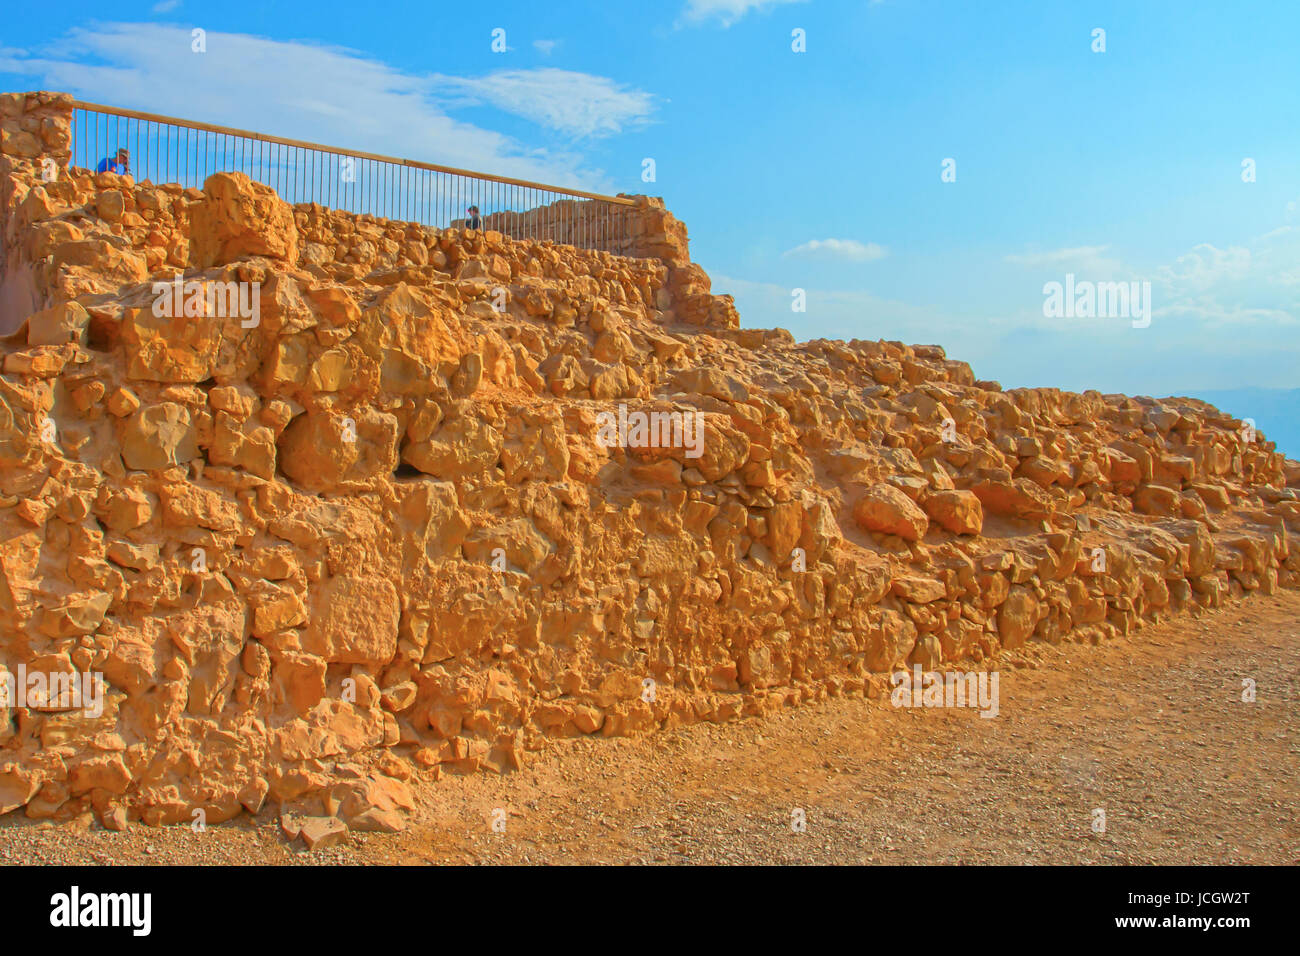 Ruins of Masada fortress, Israel Stock Photo